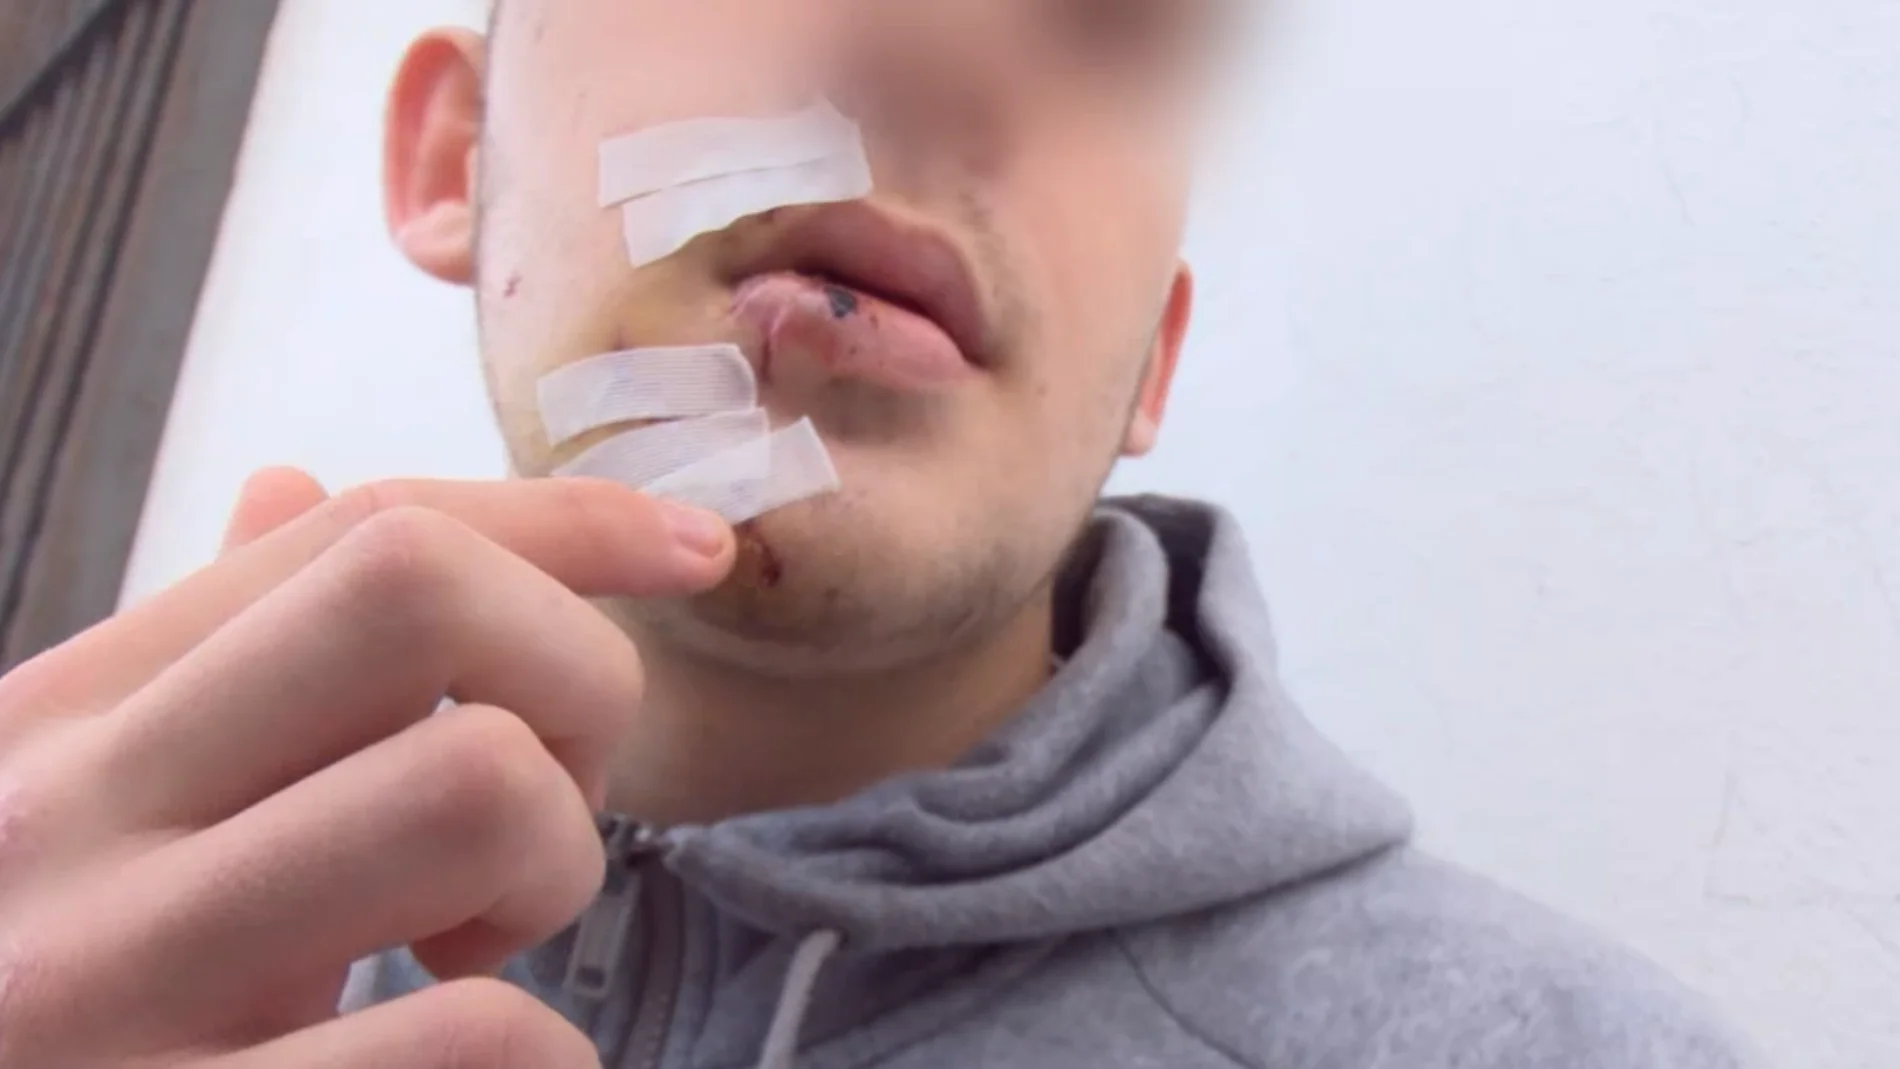 Un joven pide colaboración ciudadana para encontrar a los agresores que le golpearon con un vaso en la cara